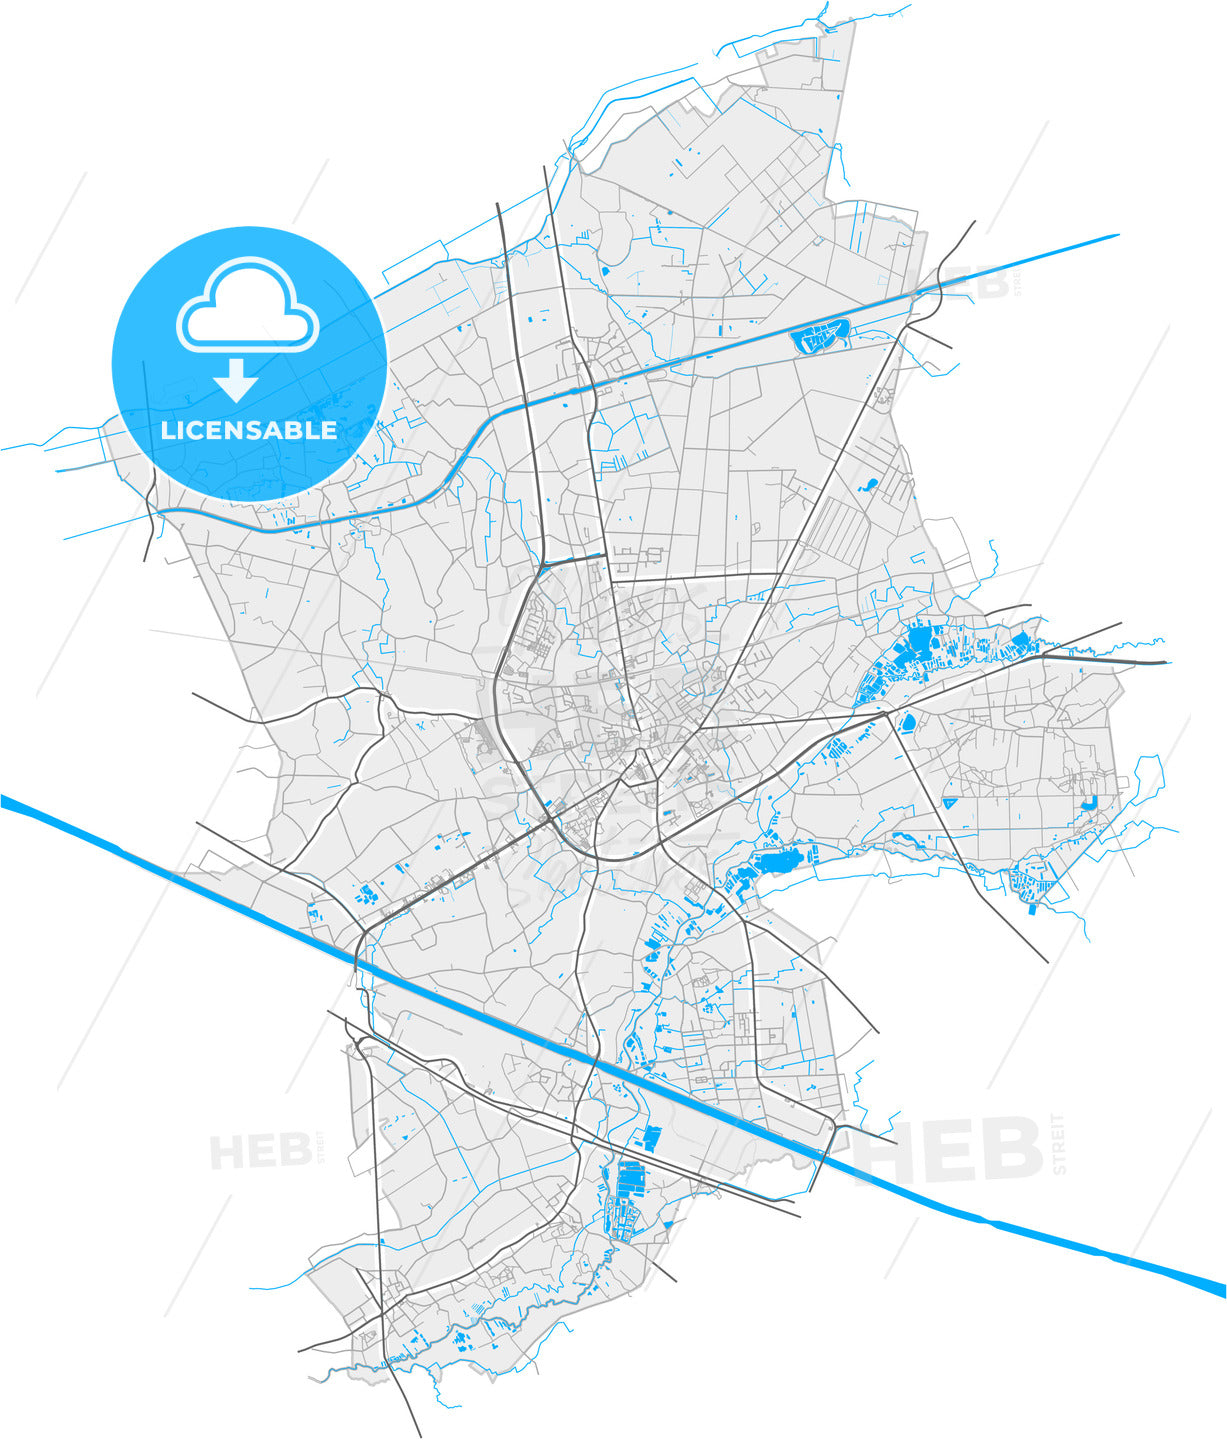 Geel, Antwerp, Belgium, high quality vector map